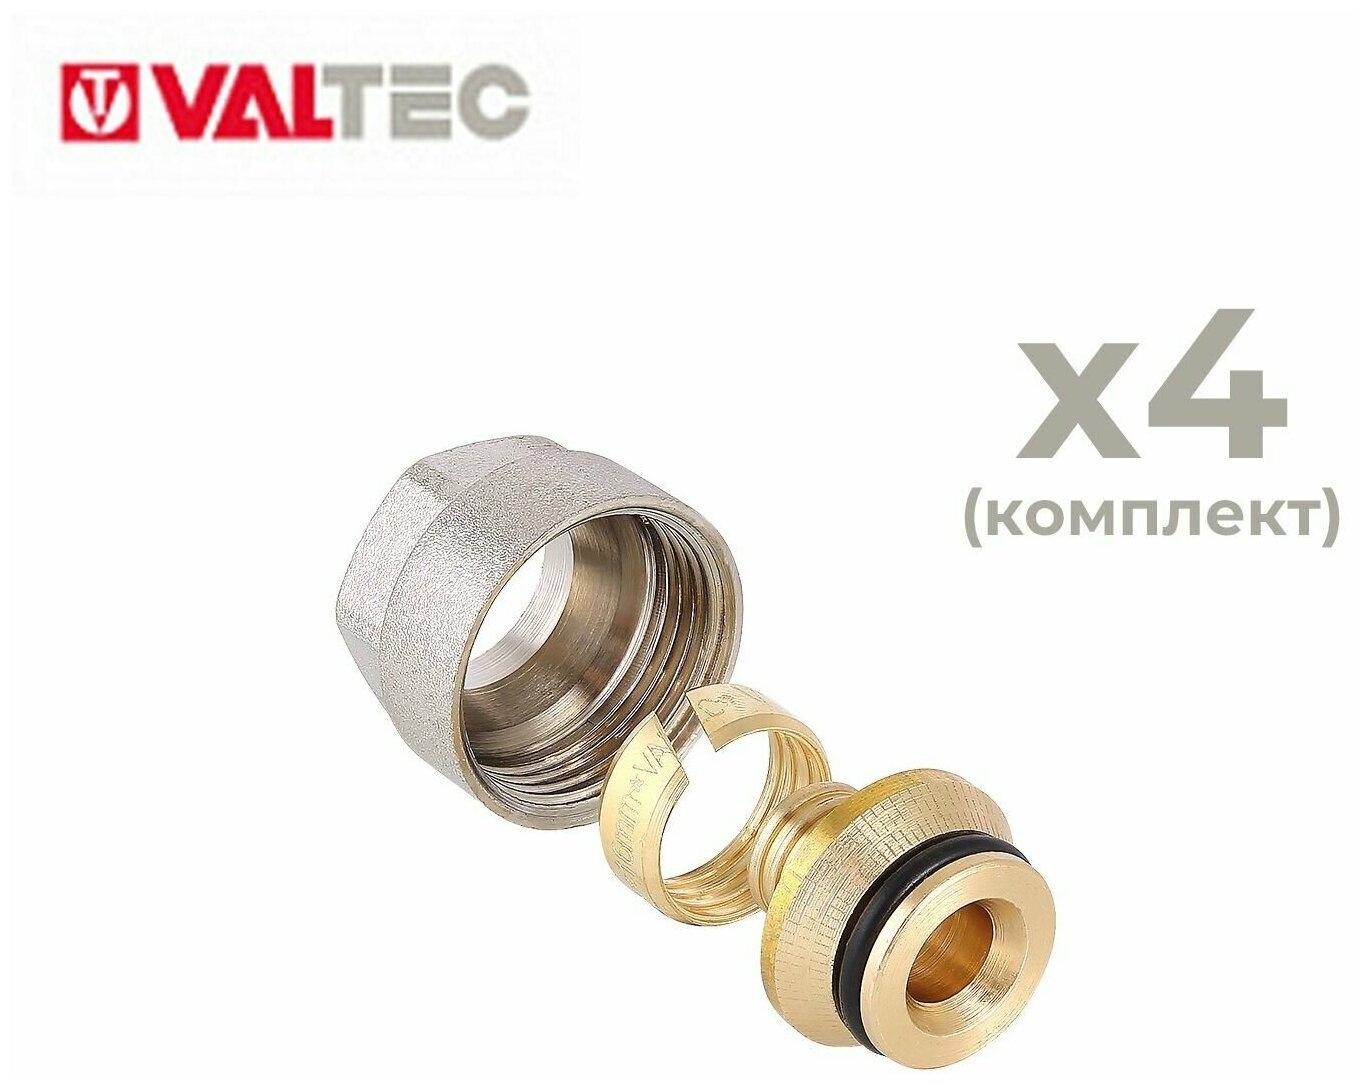 Евроконус коллекторный для пластиковой трубы Valtec 16 (2,0) мм х 3/4" (4 шт.)